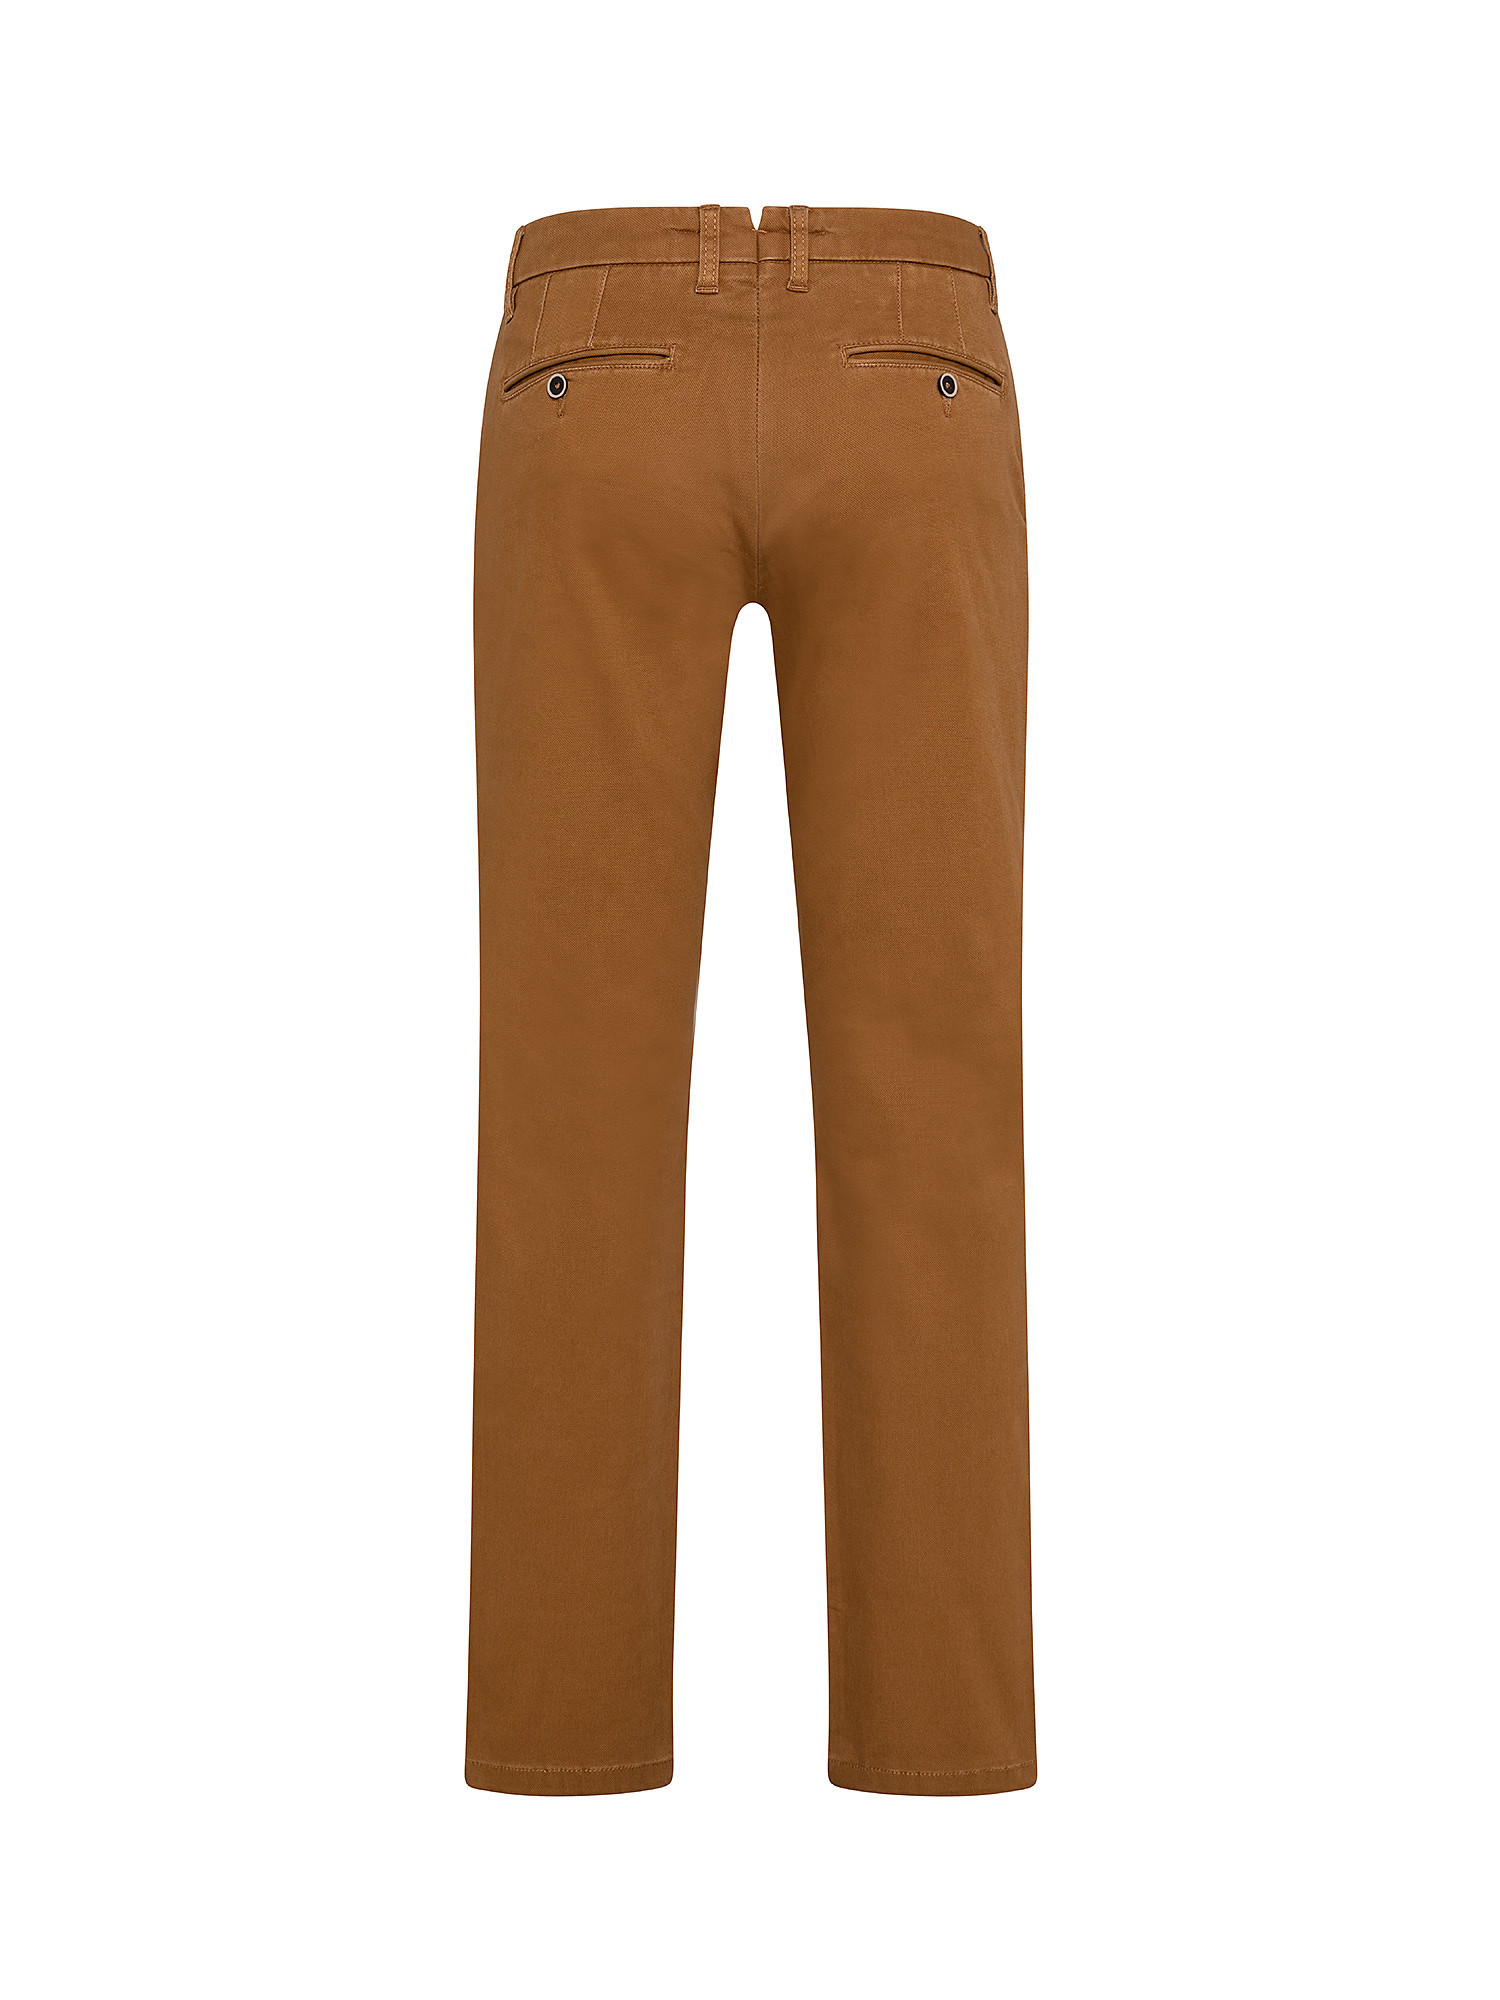 Pantalone regular fit in cotone elasticizzato, Marrone chiaro, large image number 1